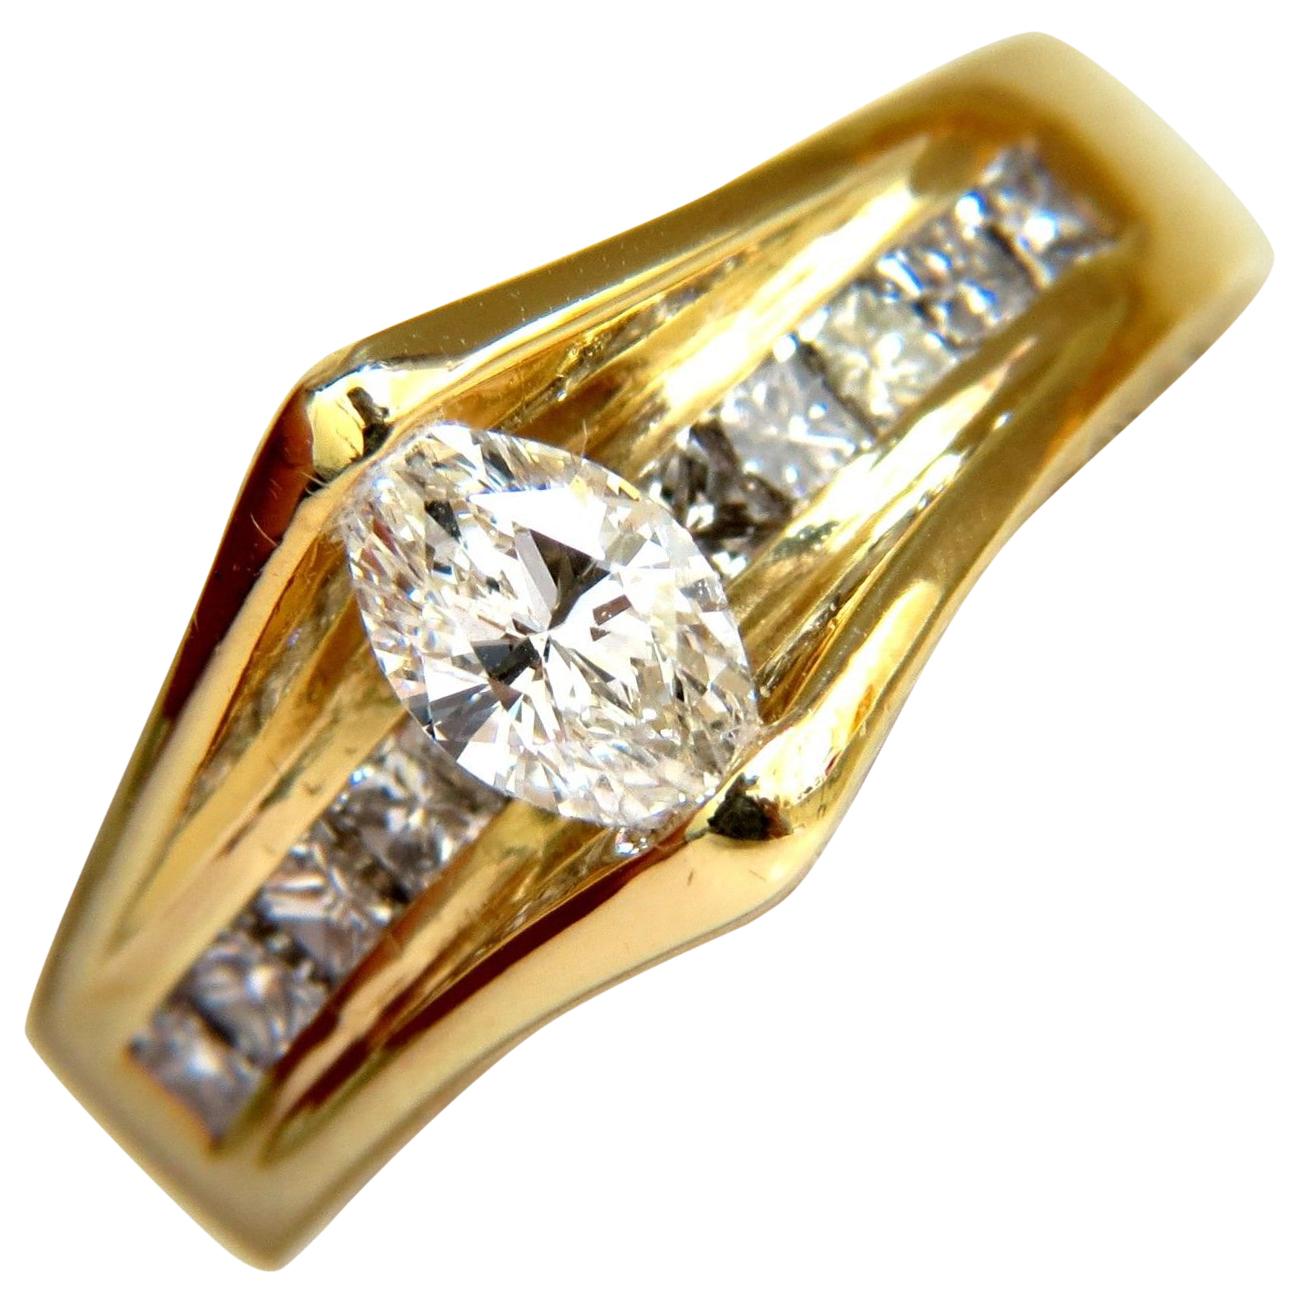 Bague Mod Déco faite à la main de 1,12 carat en or 18 carats avec diamants de 1,12 carat de Tension Classe supérieure